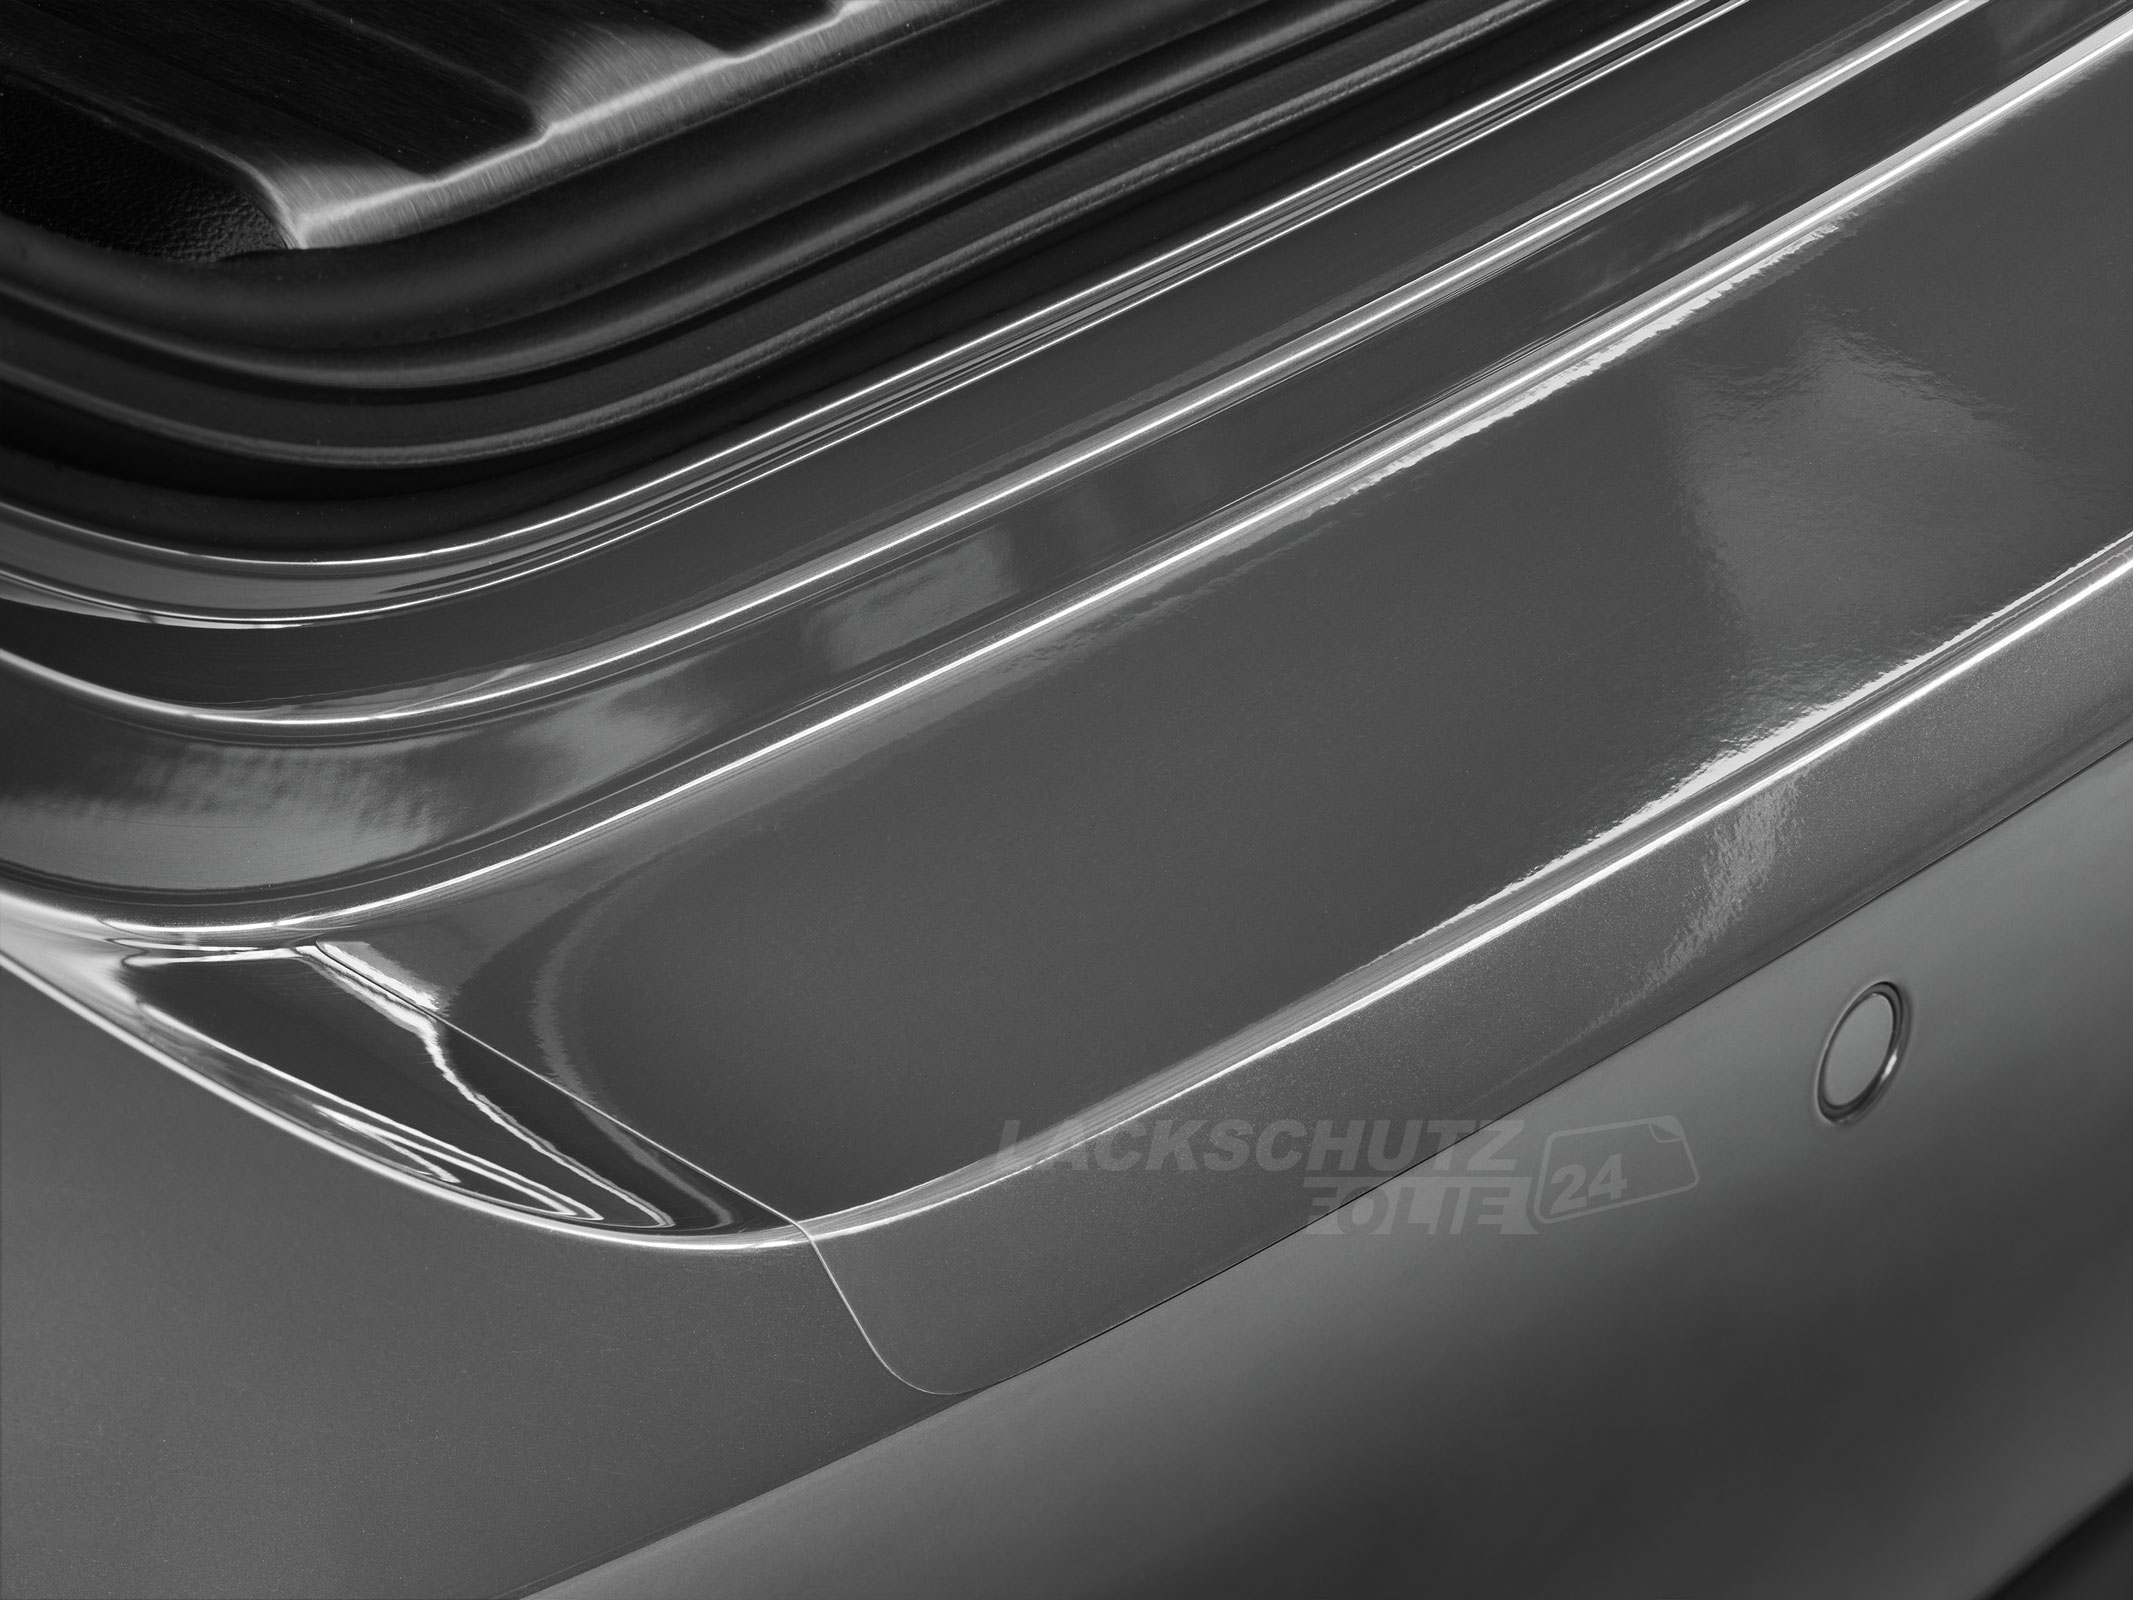 Ladekantenschutzfolie - Transparent Glatt Hochglänzend 240 µm stark für Ford Focus Schrägheck (III) Typ C346, BJ 2011-2014